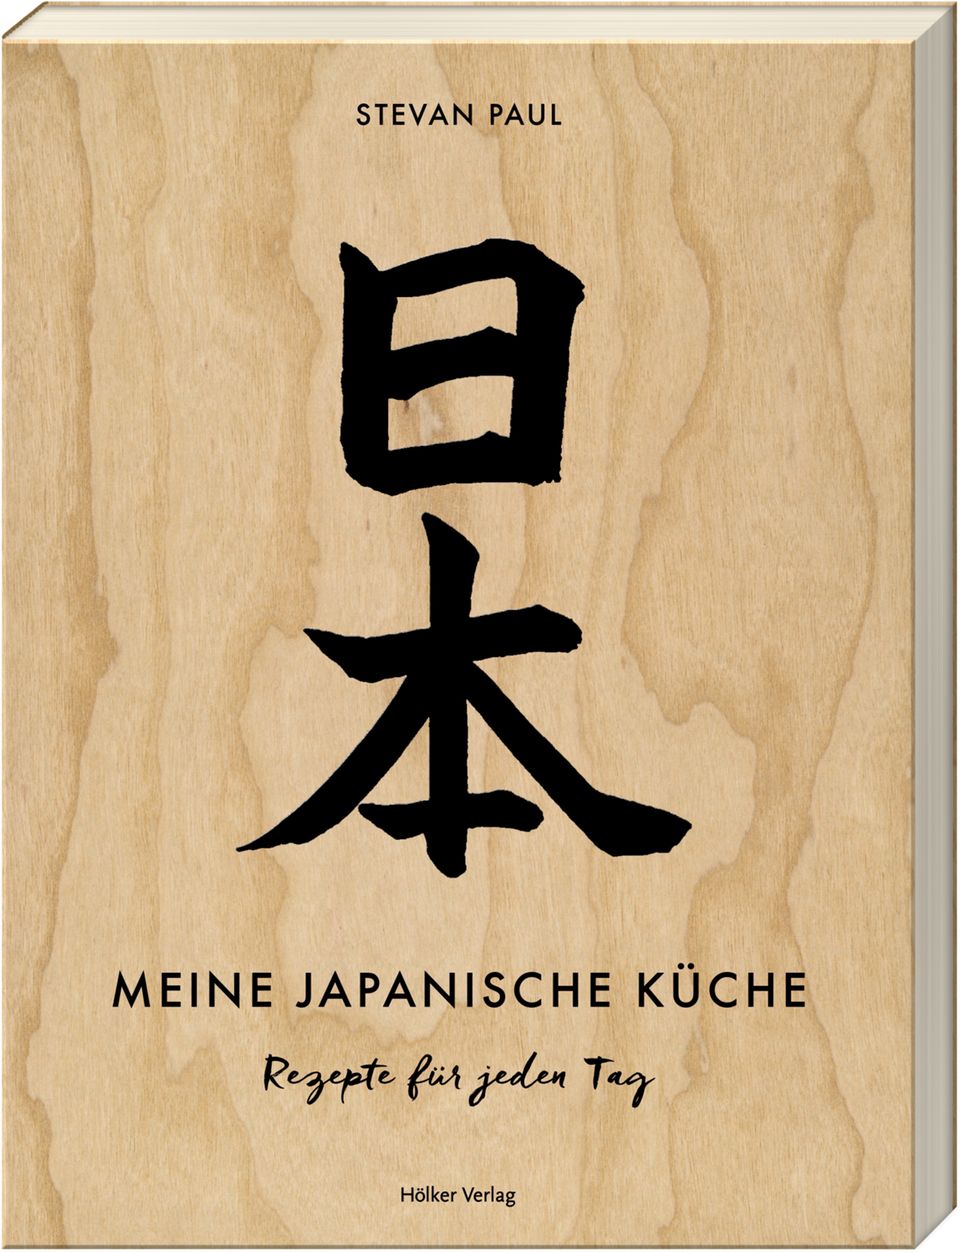 Werden Sie auch zum Japan-Koch. Rezepte und Anleitungen finden Sie in "Meine japanische Küche" von Stevan Paul. Hölker-Verlag. 224 Seiten. 32 Euro.